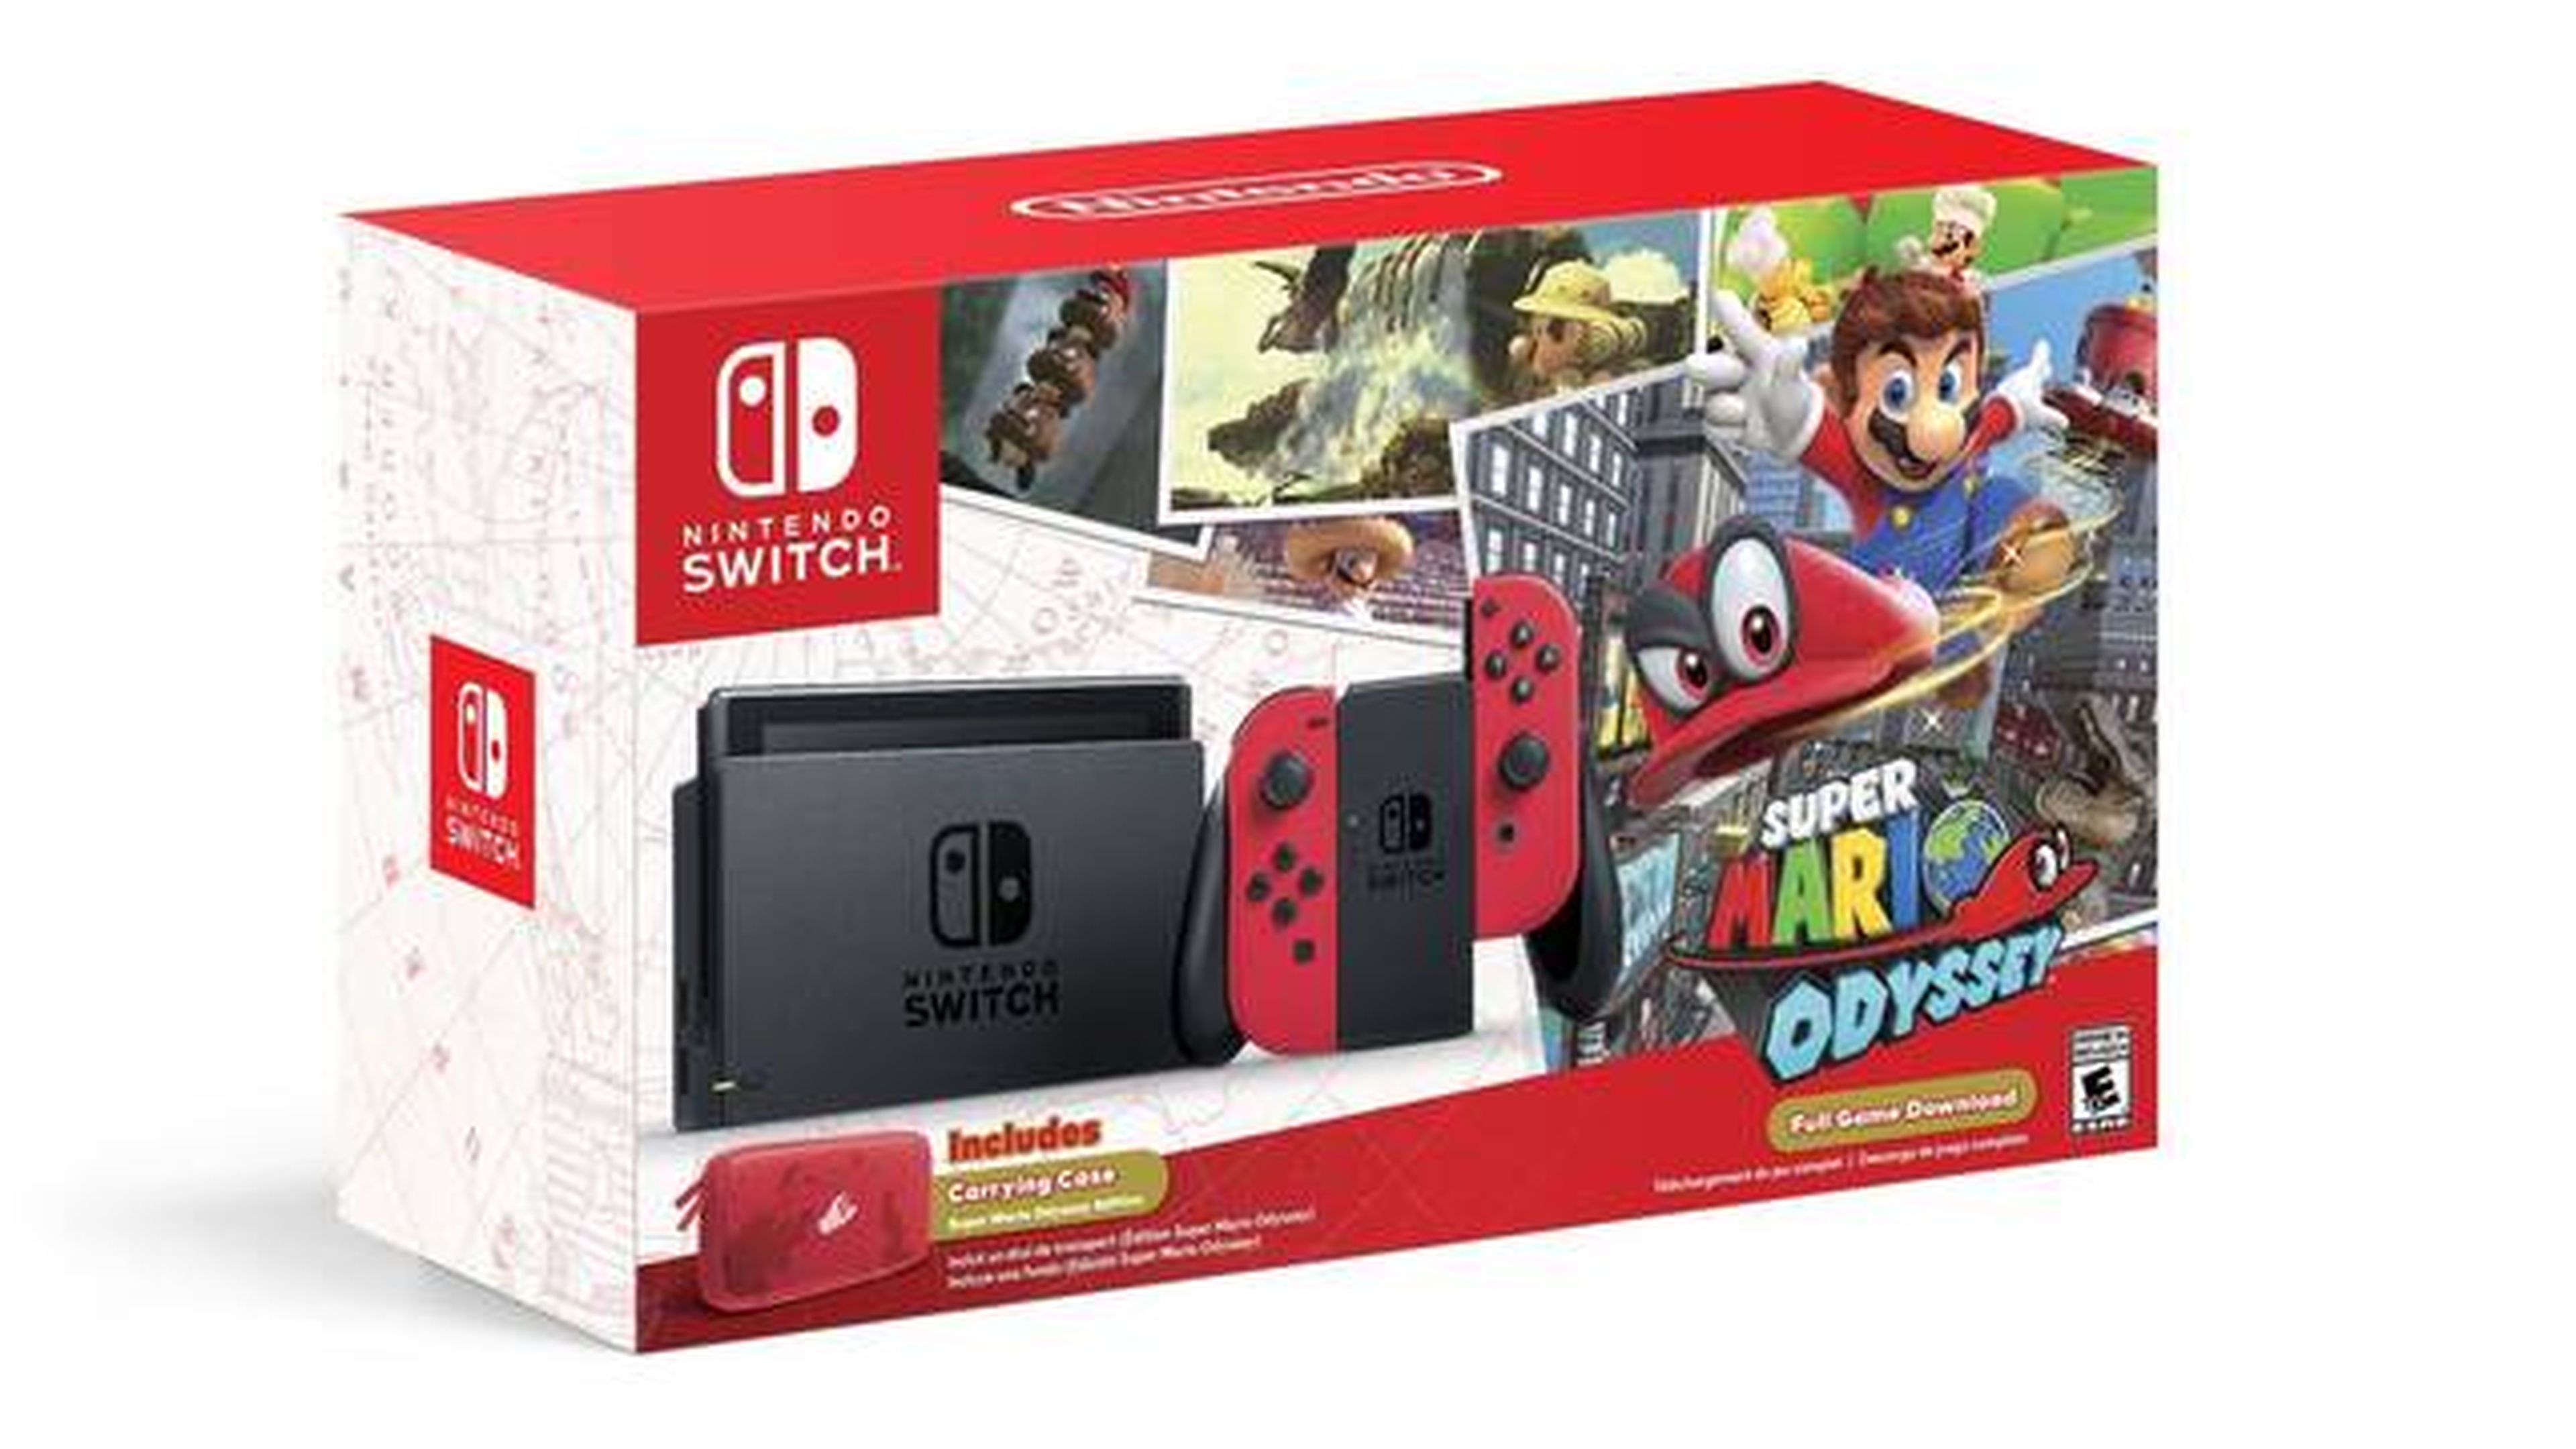 Pack especial de Nintendo Switch con Super Mario Odyssey